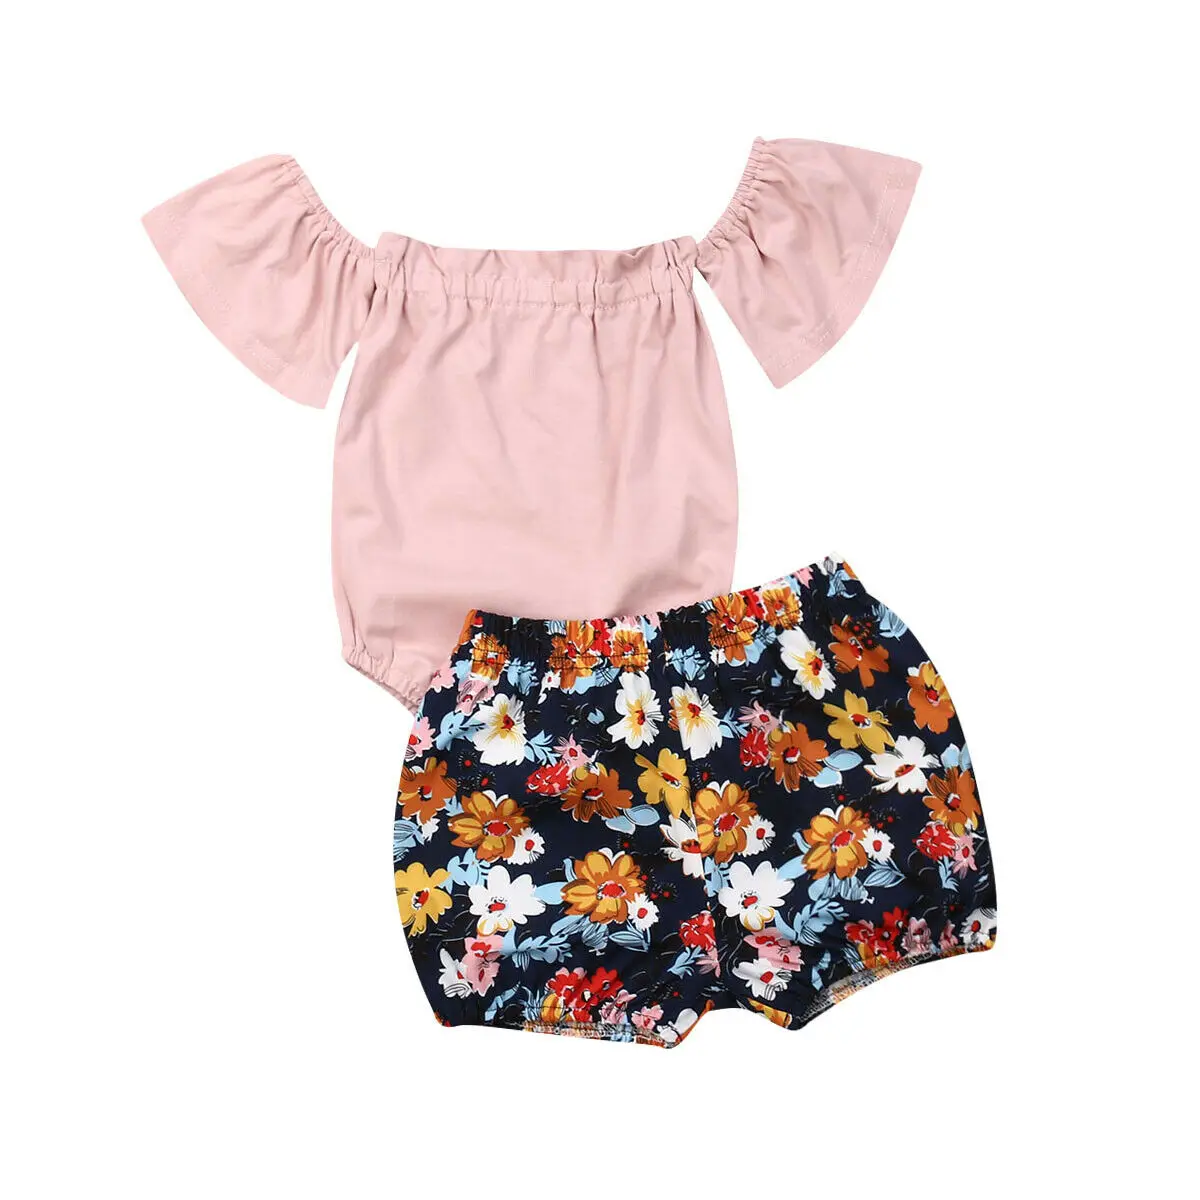 Новая одежда для маленьких девочек розовая Кружевная футболка с короткими рукавами комбинезон, короткие штаны с цветочным принтом